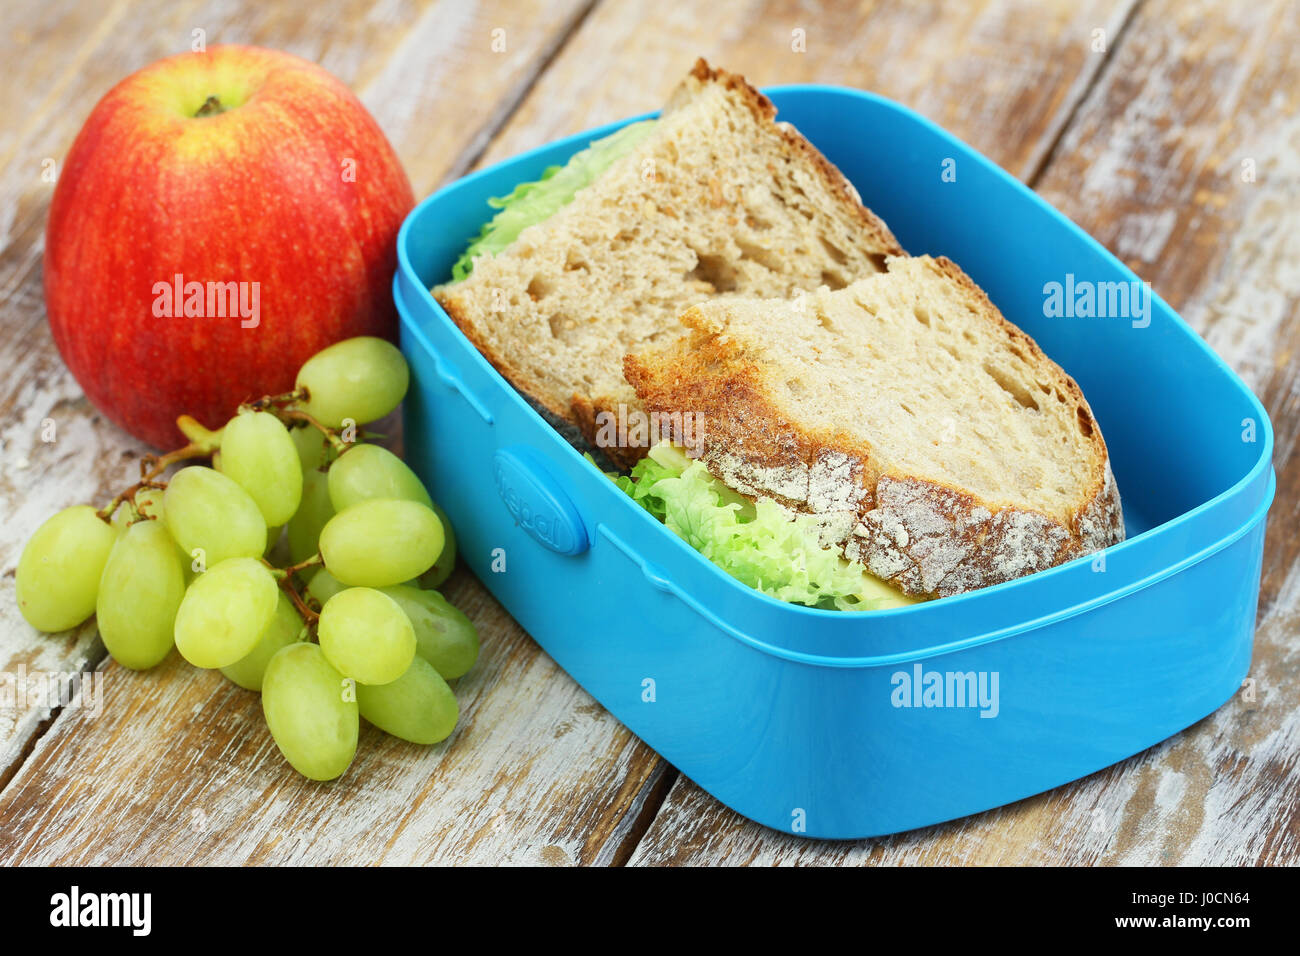 Scuola pranzo composto da pane rustico panini con formaggio e lattuga, apple e uva Foto Stock